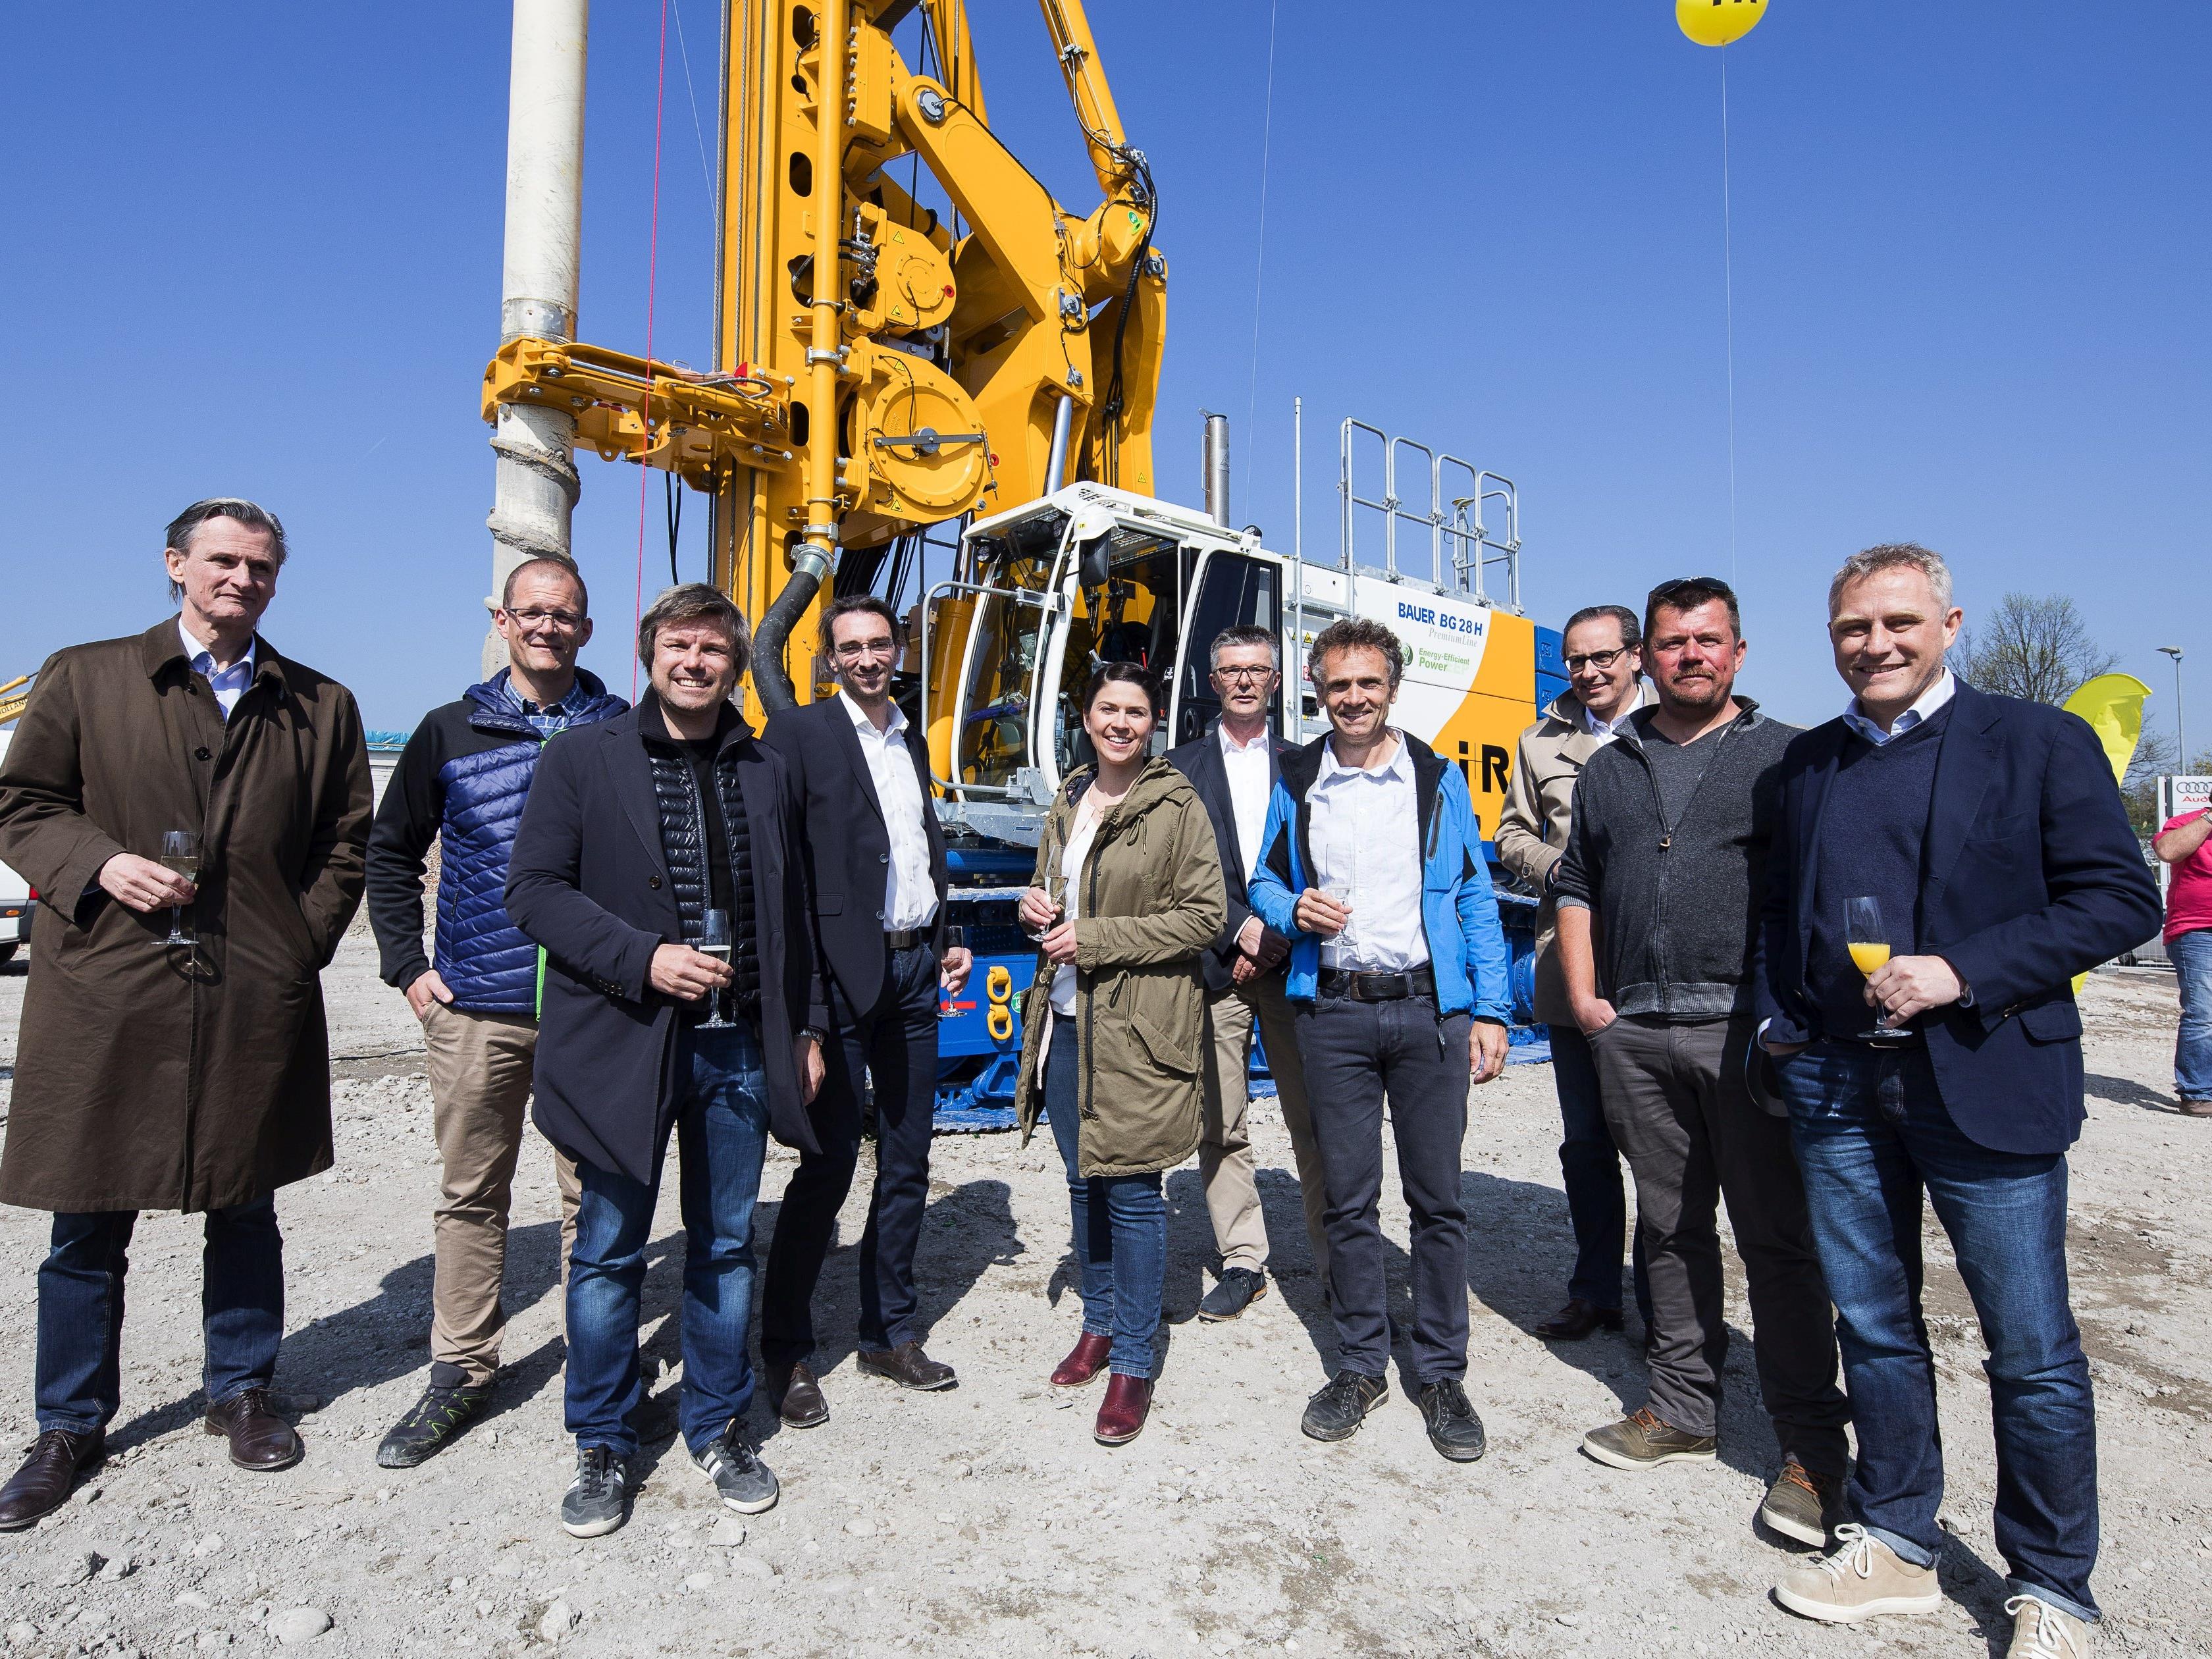 Die Eigentümer der i+R Gruppe, Geschäftsführer der i+R Bau und das Team der i+R Spezialtiefbau feierten am Freitag die Einweihung des neuen Drehbohrgerätes.